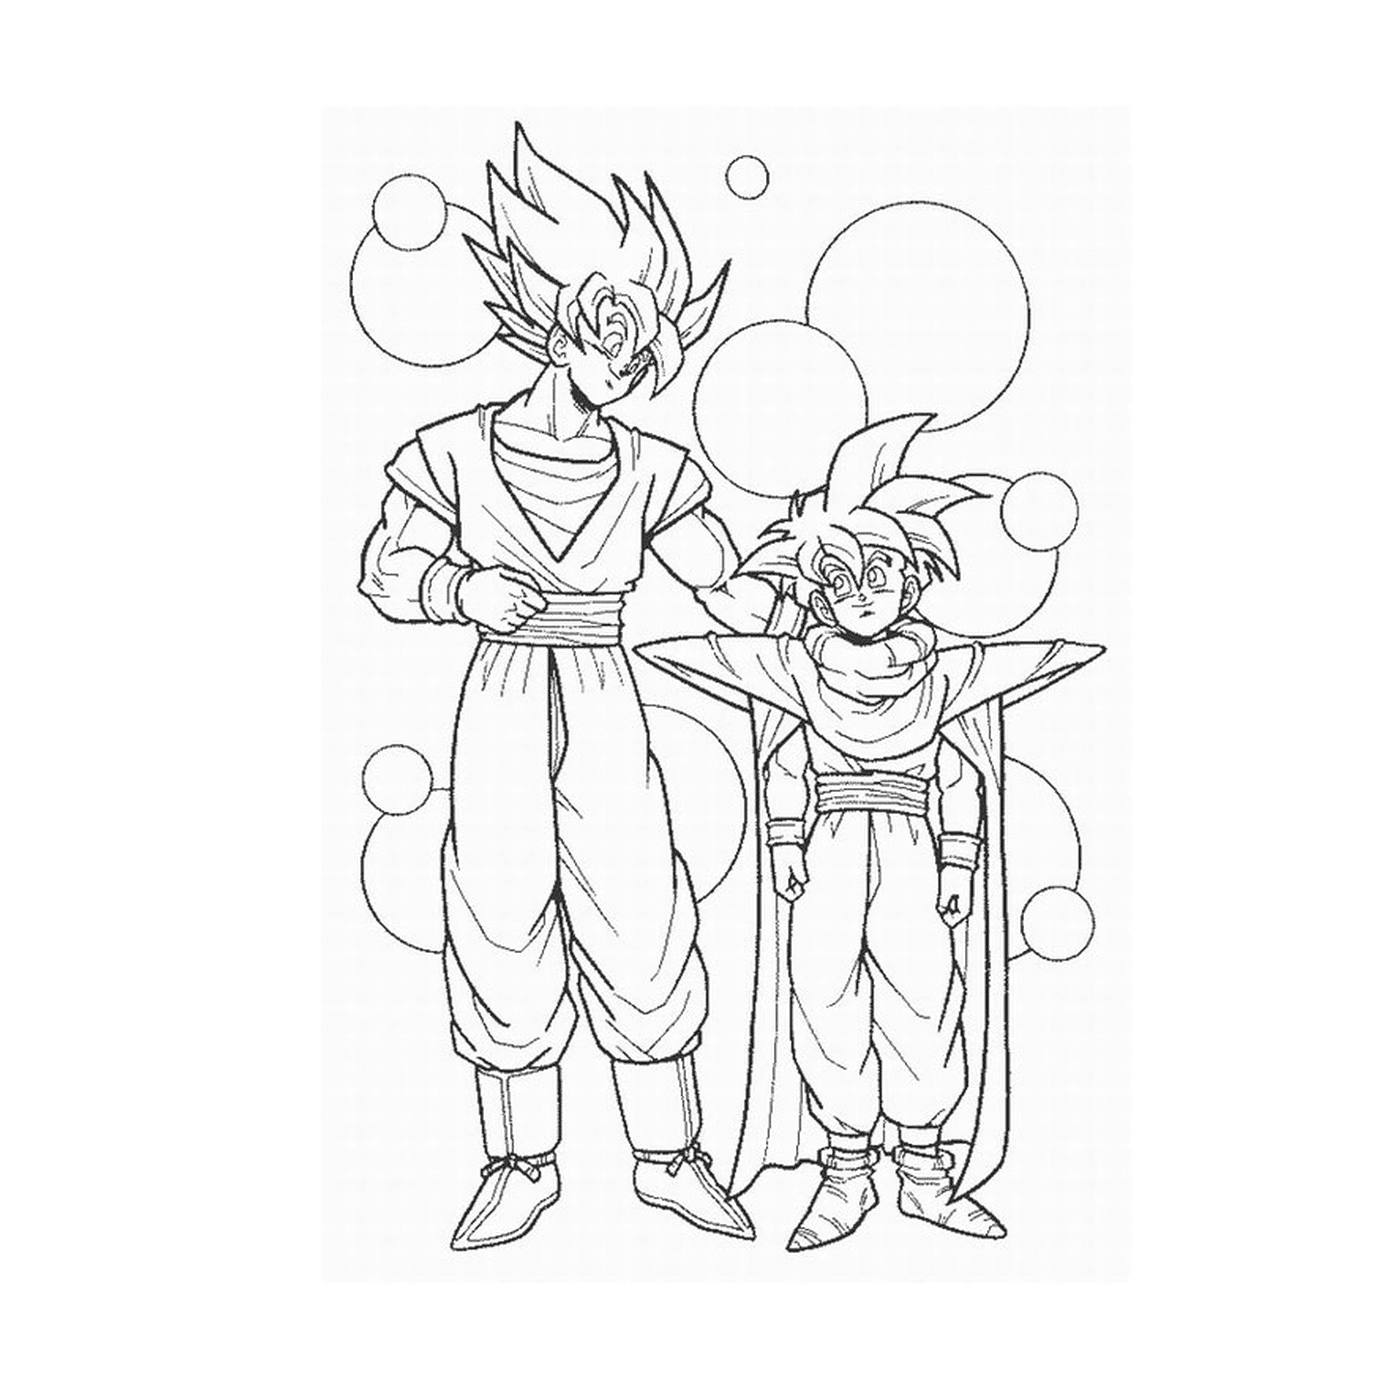   Goku et Vegeta, puissants guerriers 